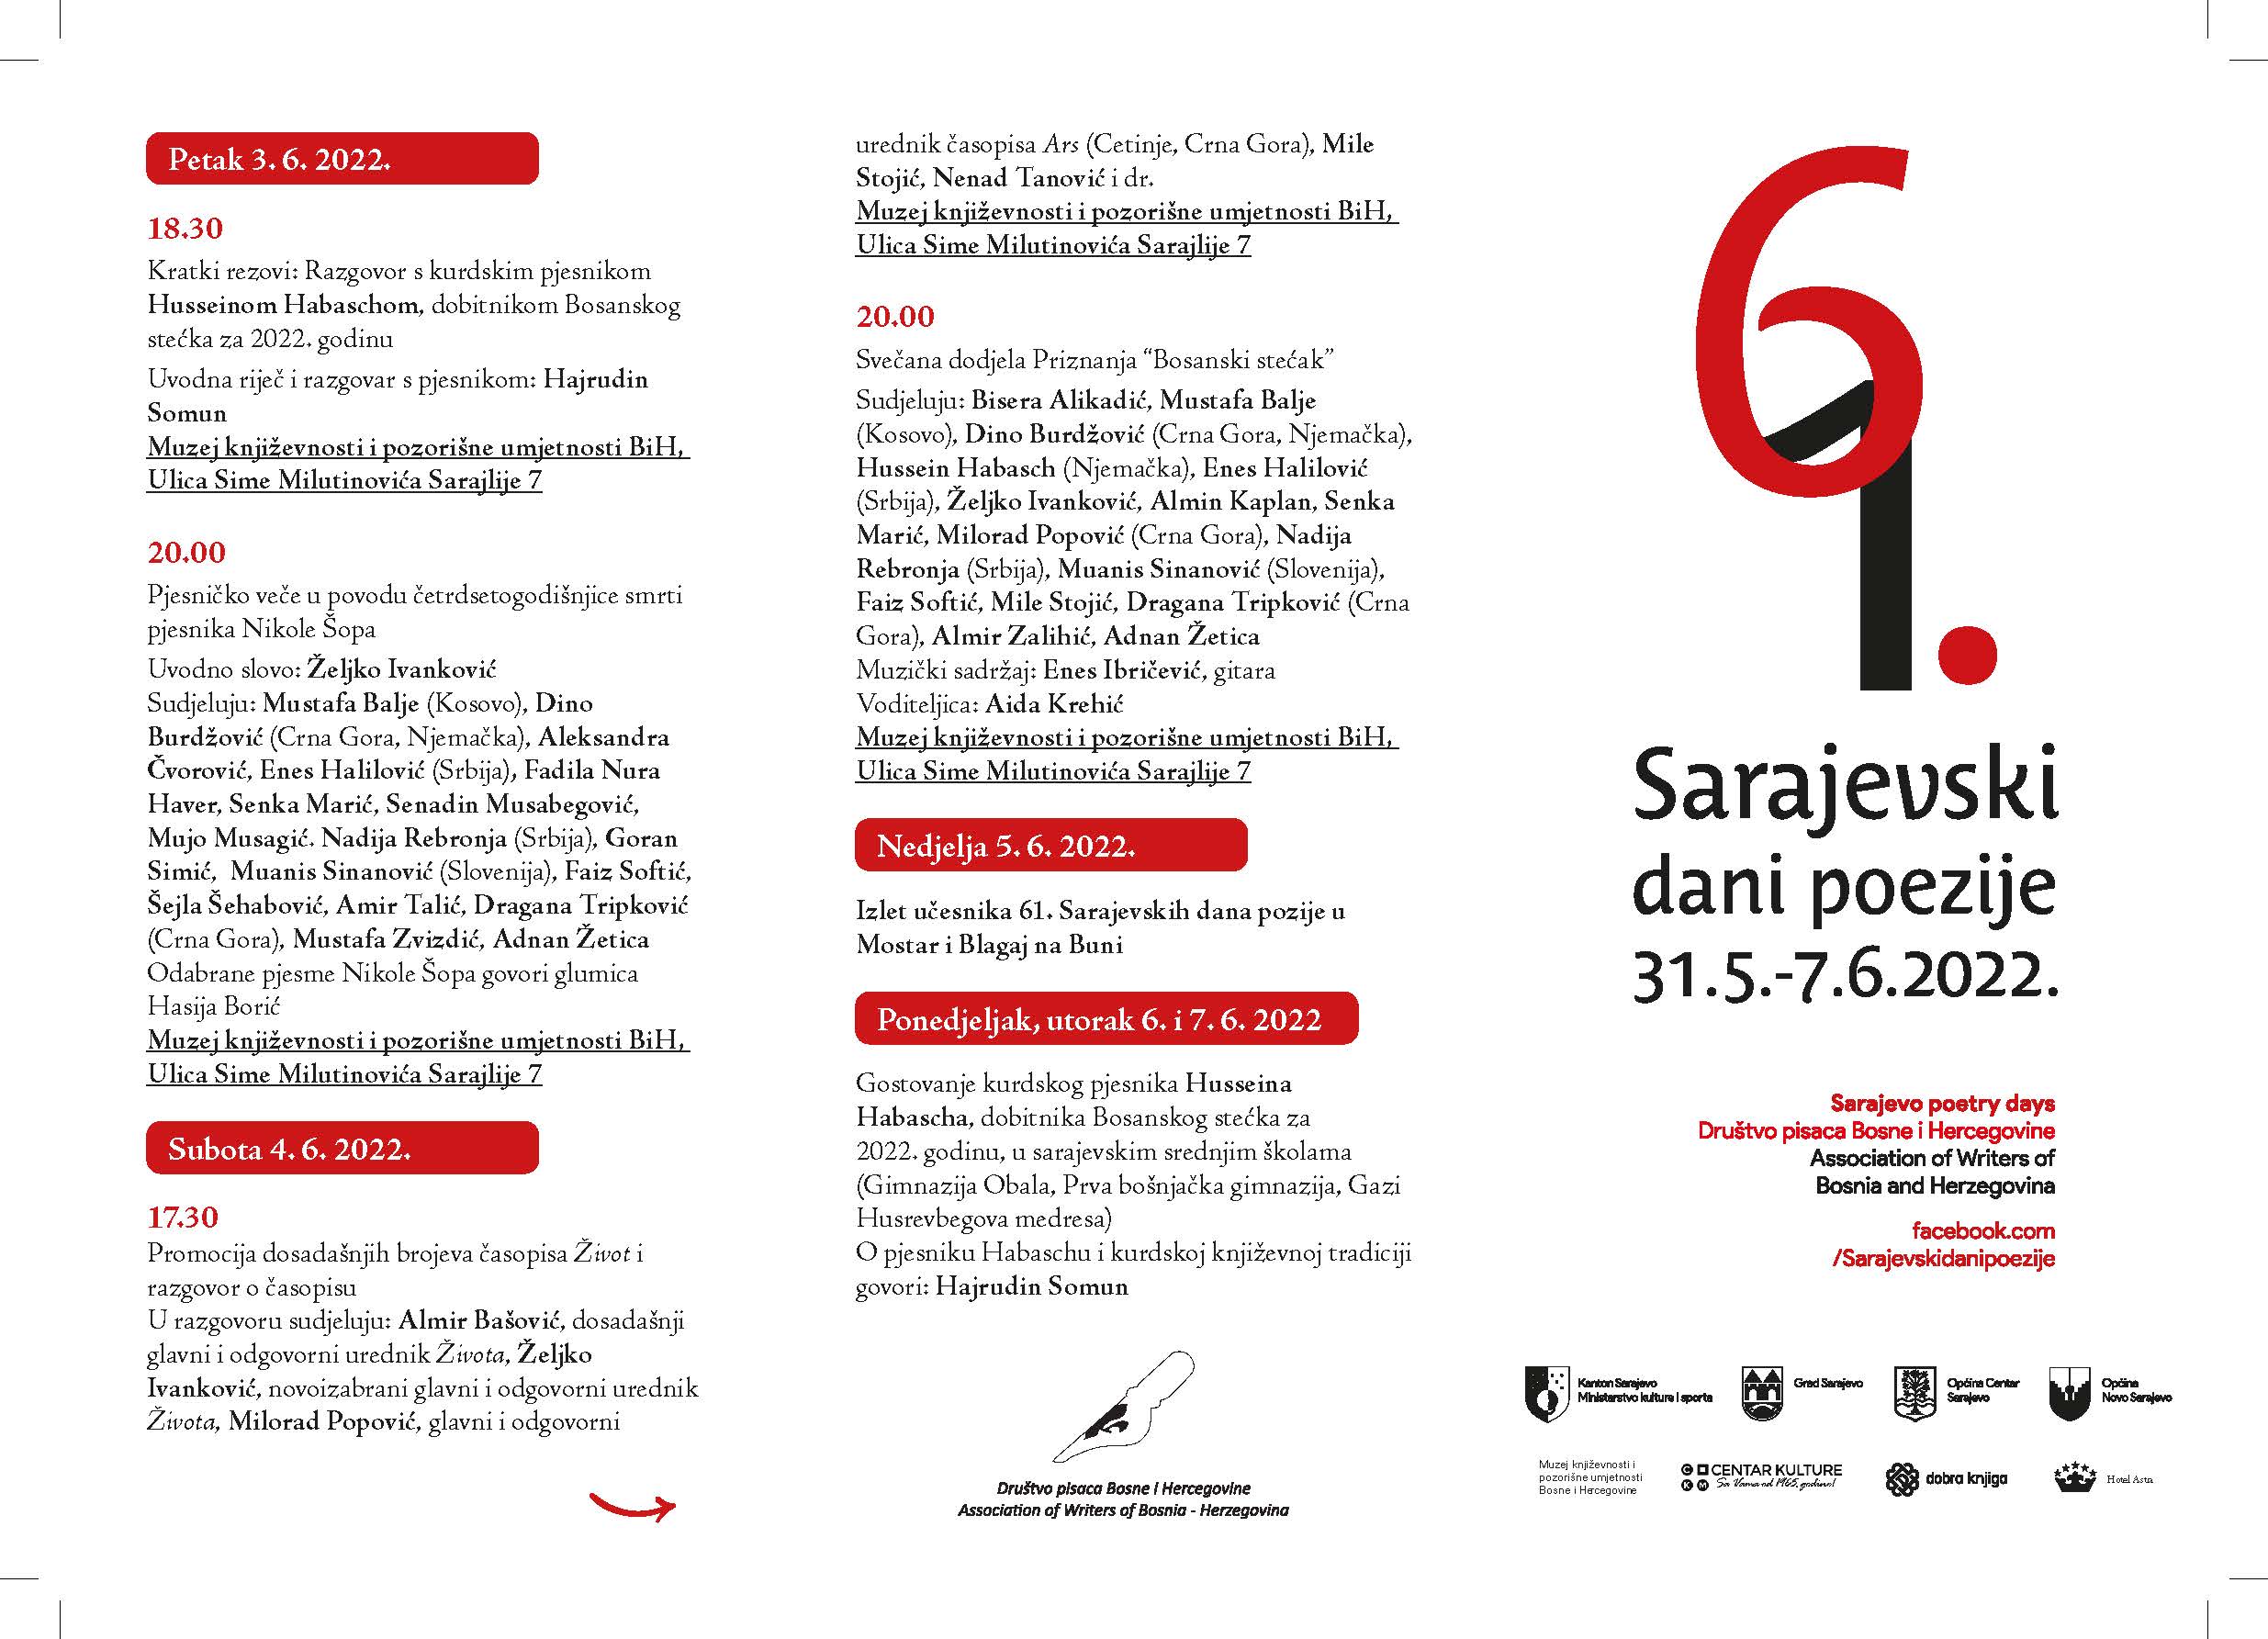 61. Sarajevski dani poezije